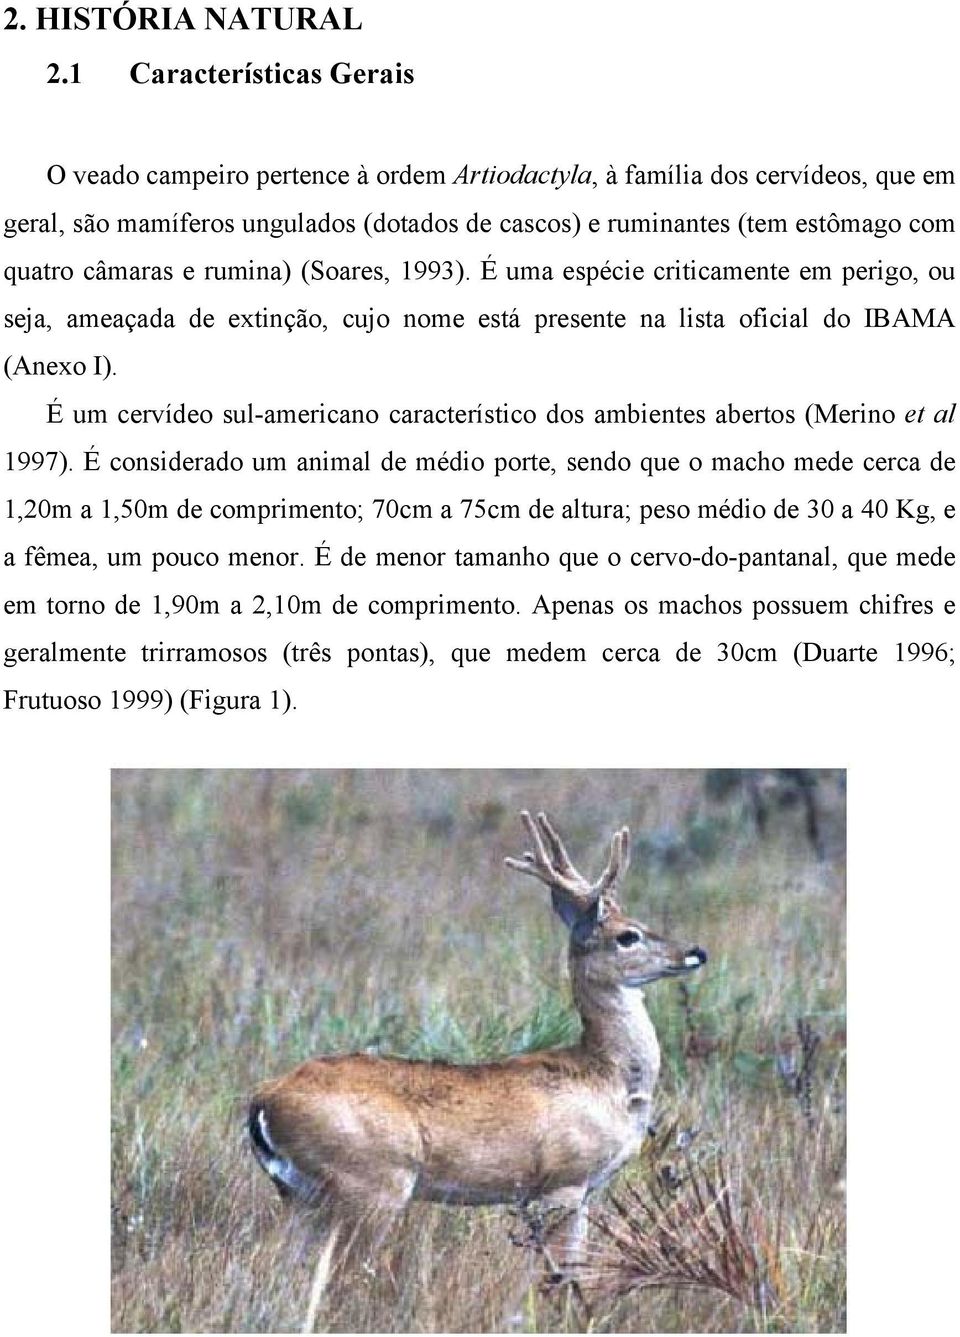 câmaras e rumina) (Soares, 1993). É uma espécie criticamente em perigo, ou seja, ameaçada de extinção, cujo nome está presente na lista oficial do IBAMA (Anexo I).